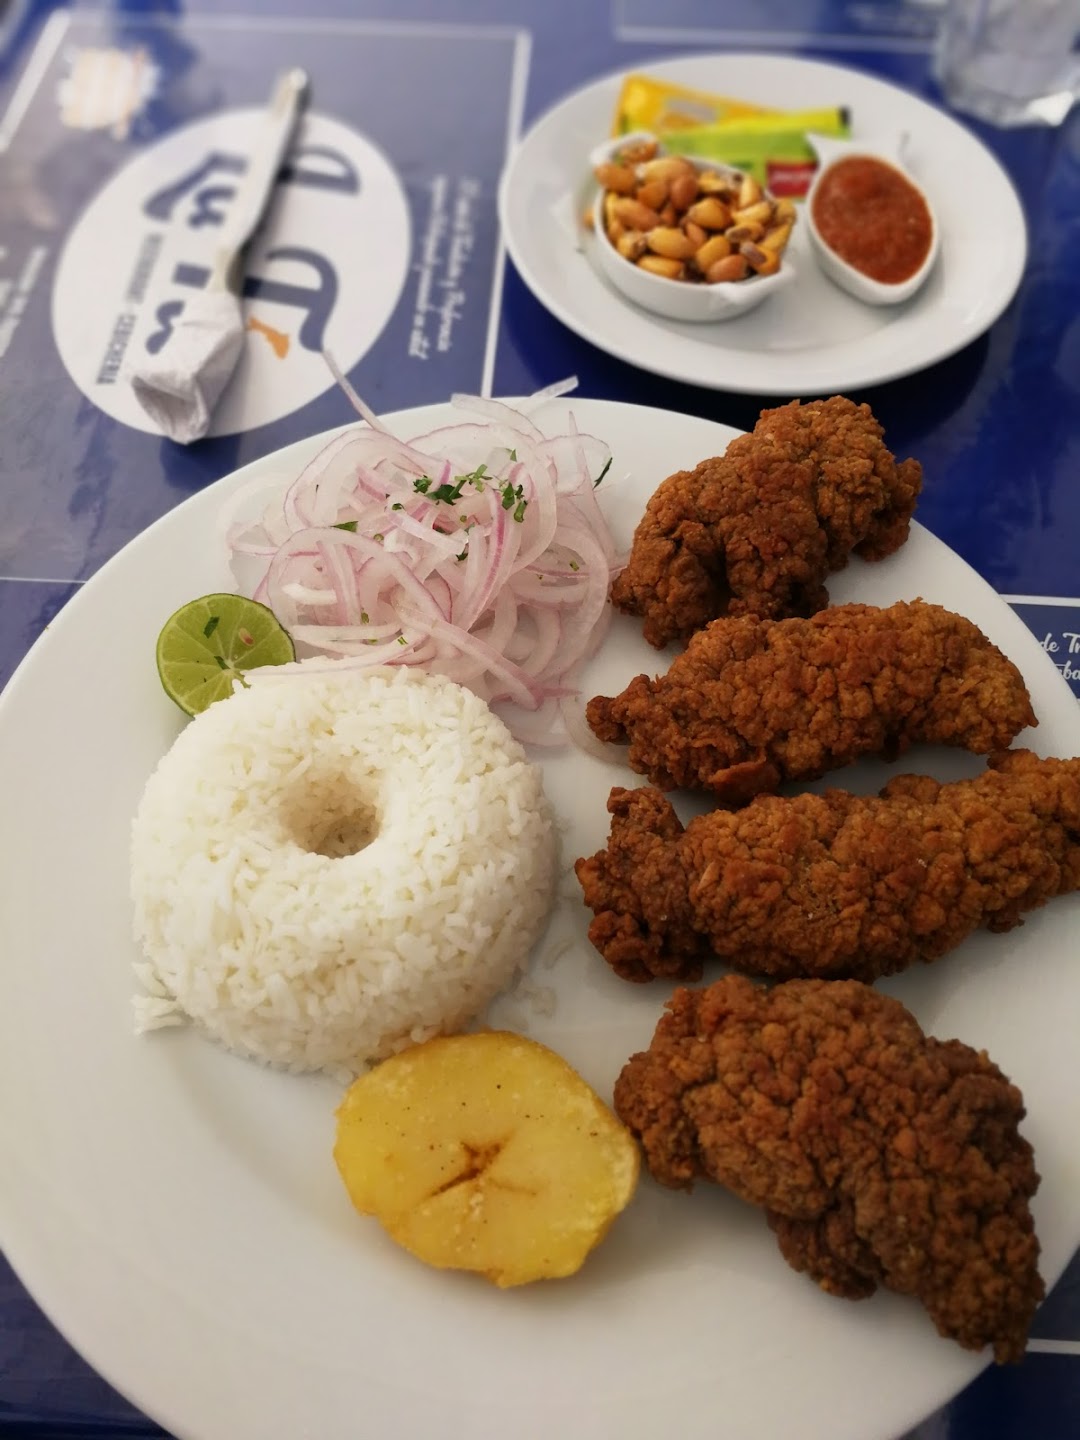 La Tía Restaurant - Cevichería